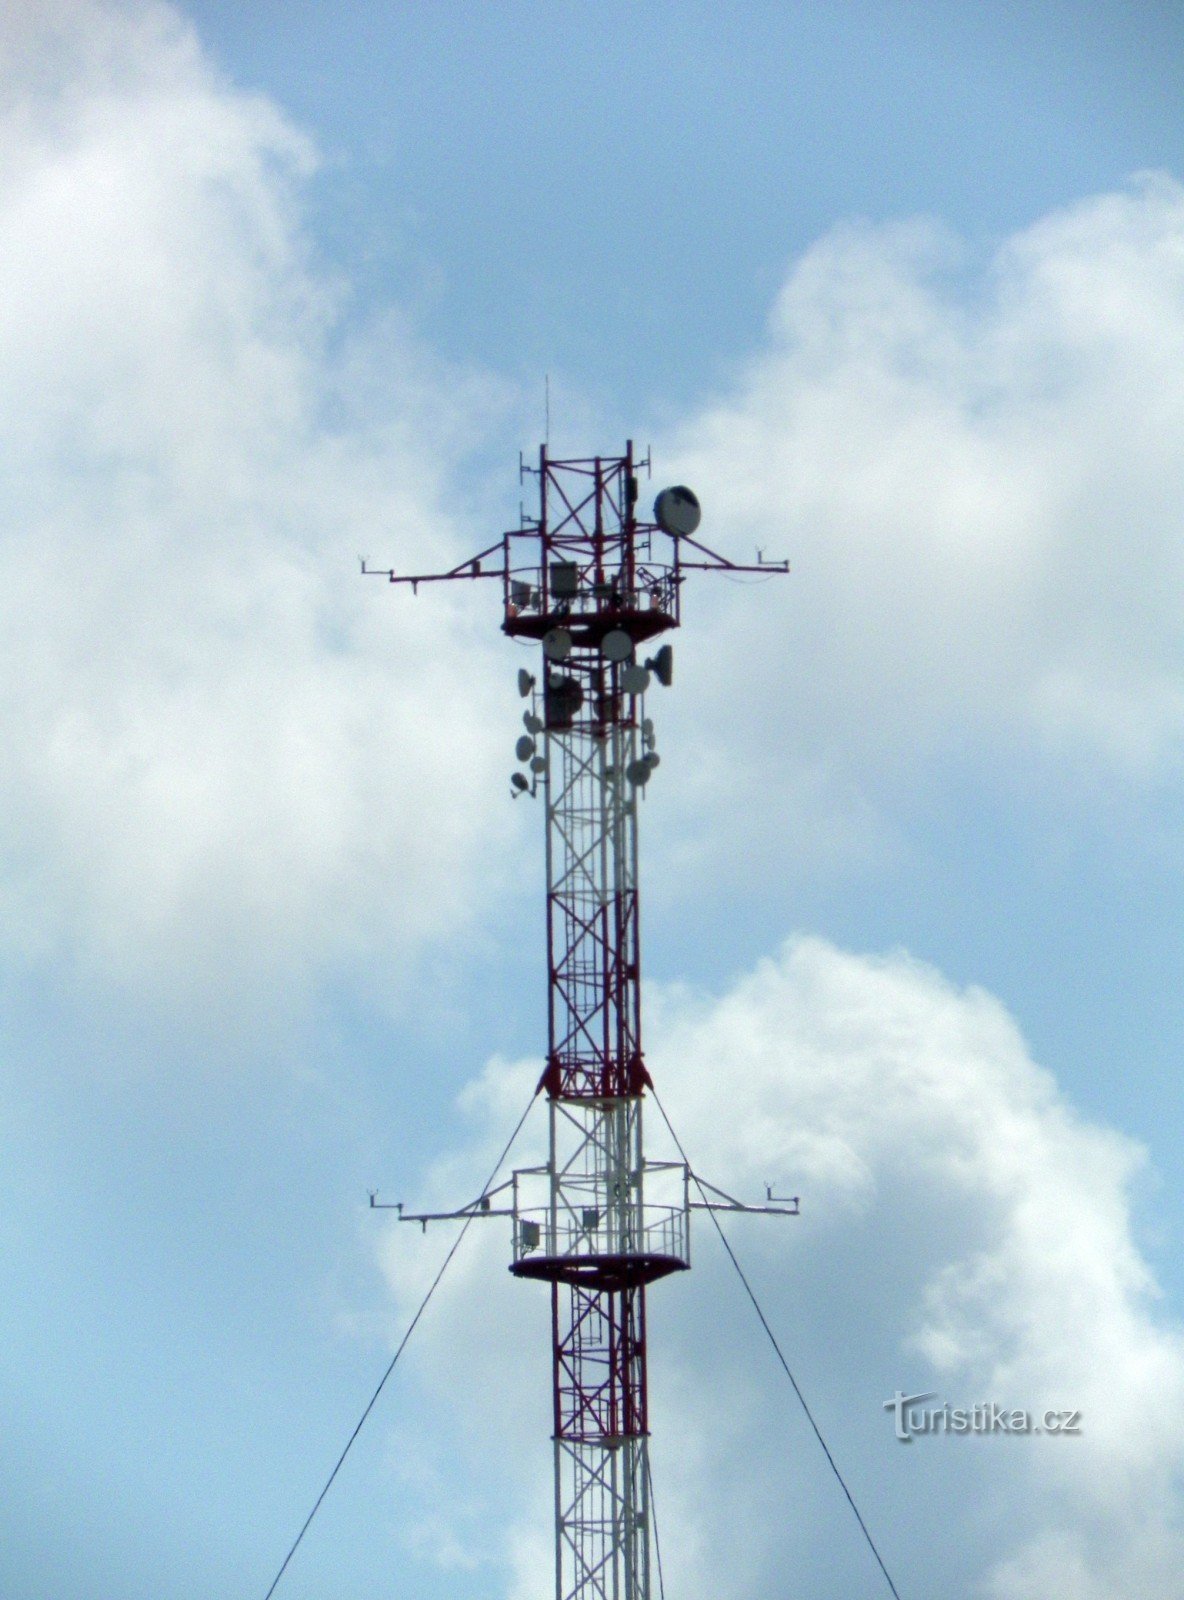 Detal szczytu masztu z kamerą internetową, miernikami meteo i antenami telekomunikacyjnymi